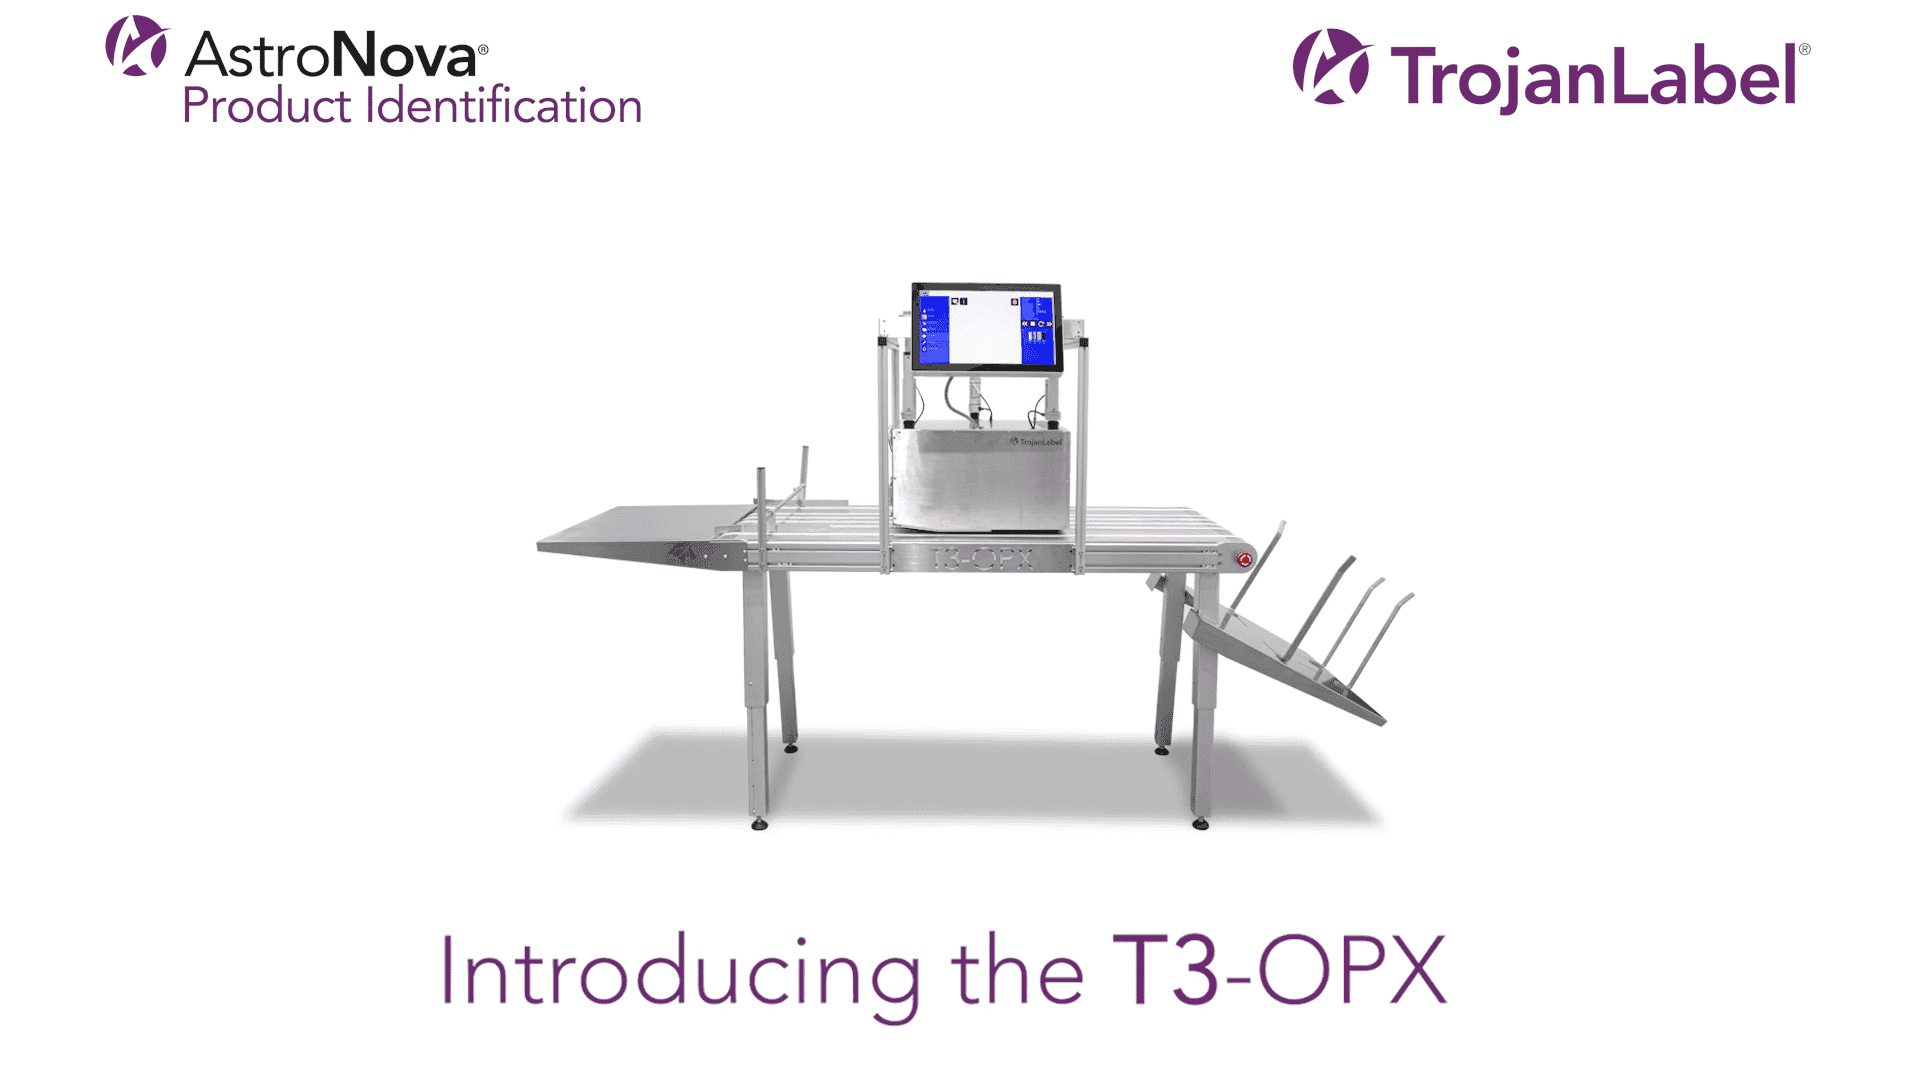 Presentamos el T3-OPX